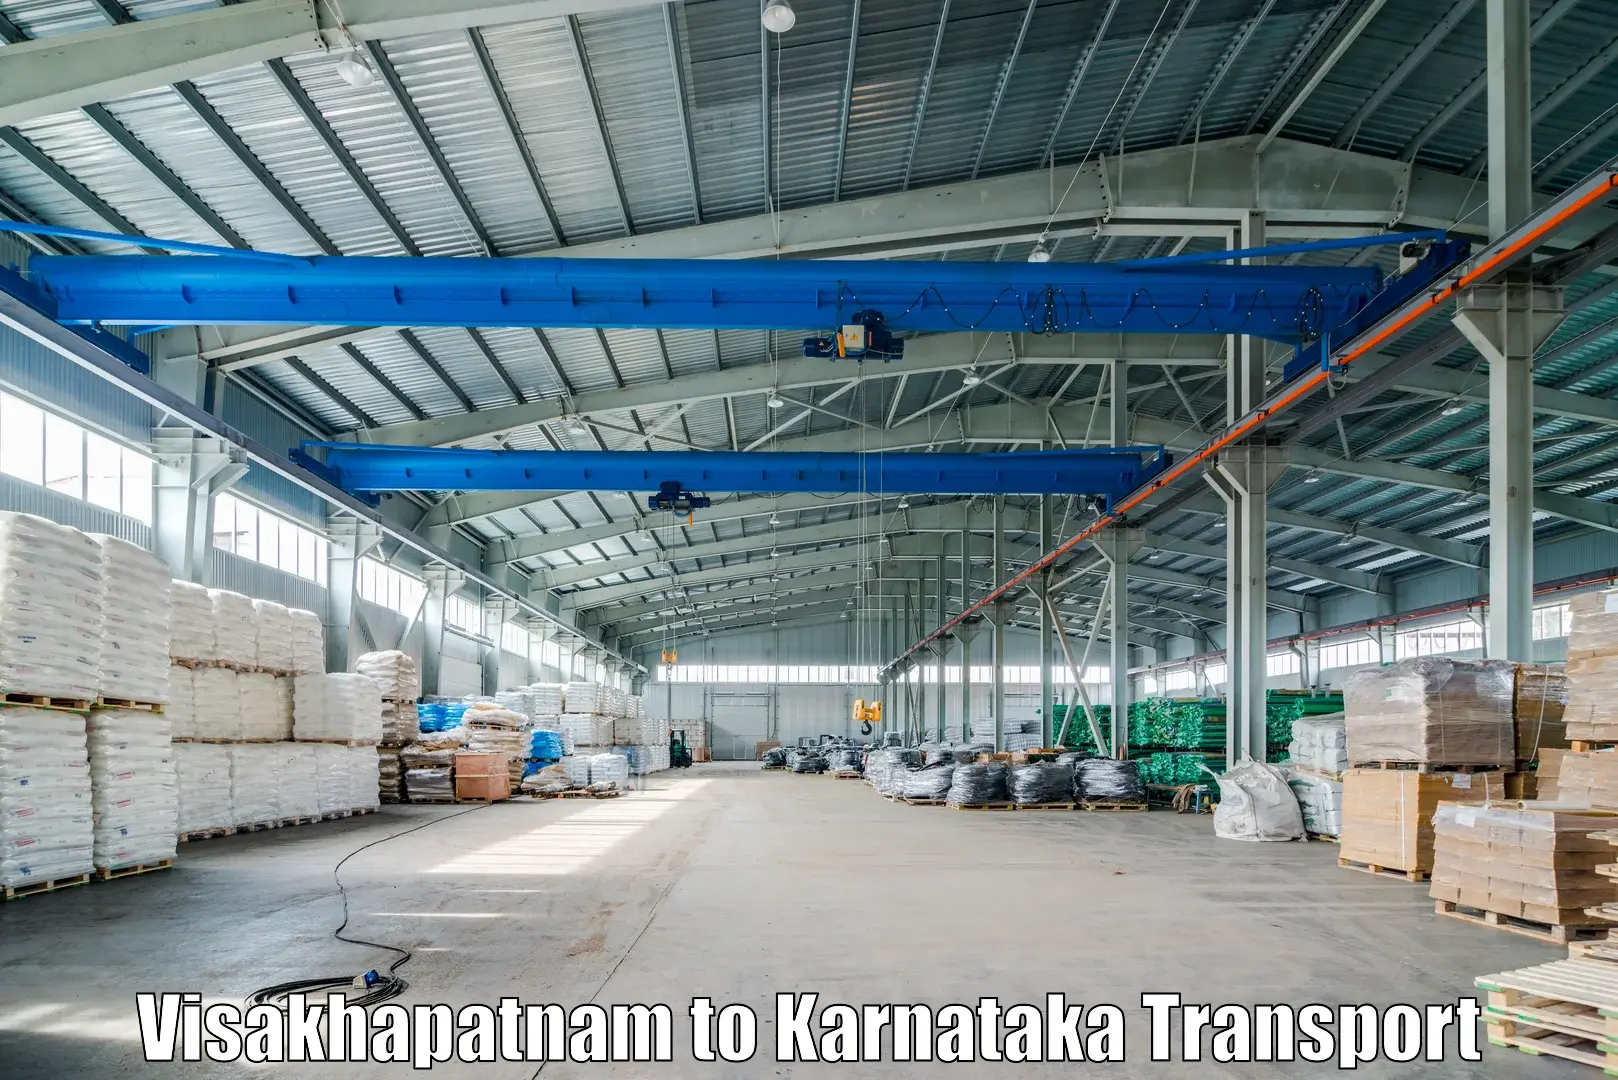 Intercity transport Visakhapatnam to Thirthahalli